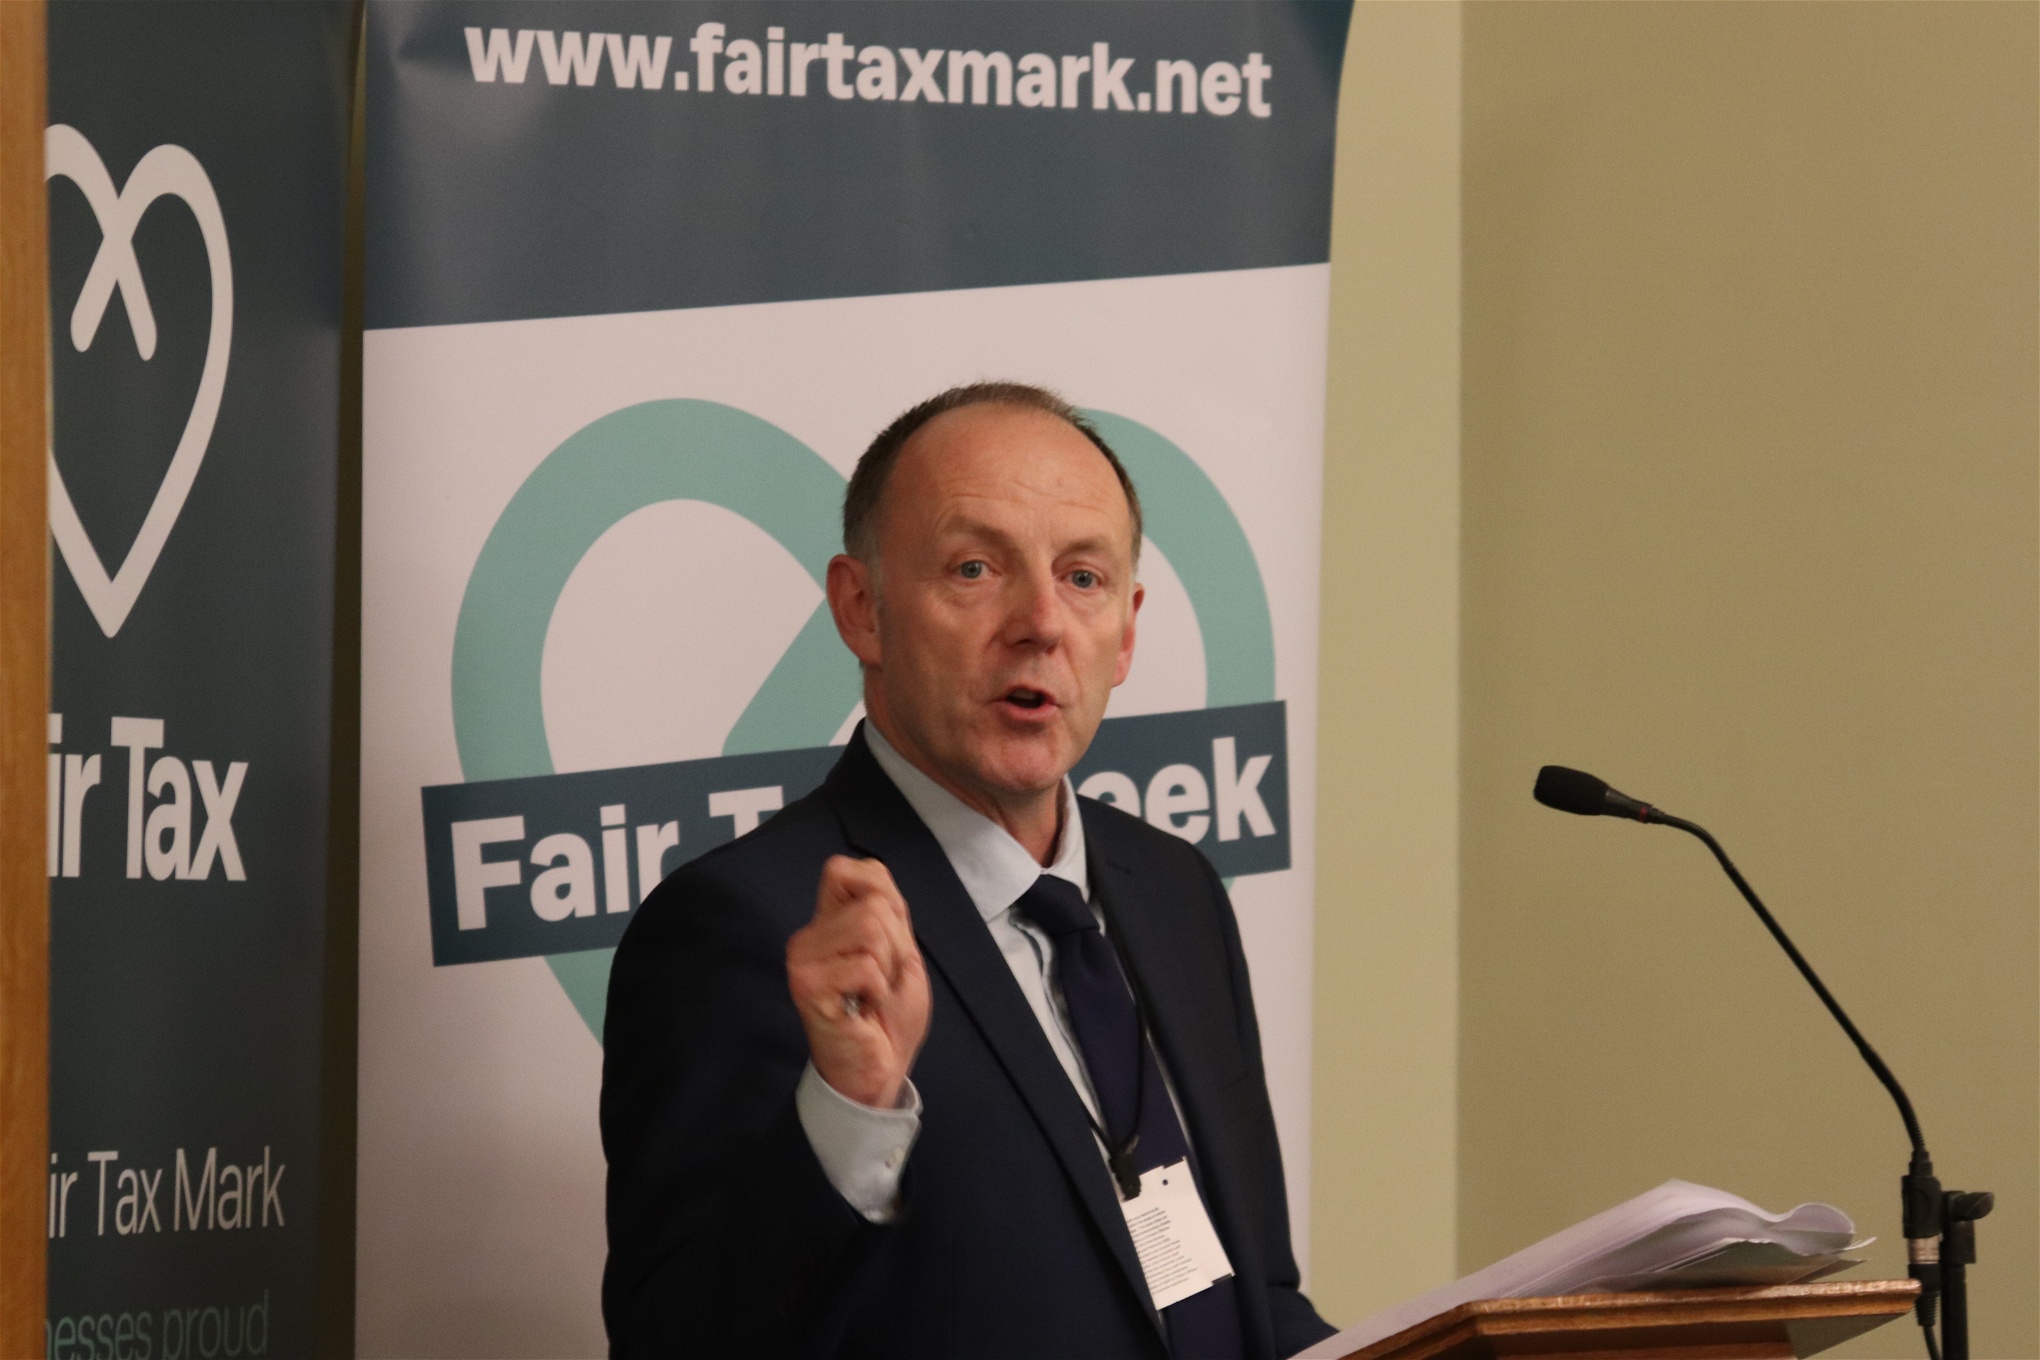 Foto: Fair Tax MarkPaul Monaghan är vd på den brittiska organisationen Fair Tax Mark och menar att Amazon satt i system att bokföra förluster i sina lokala filialer runt om i Europa.